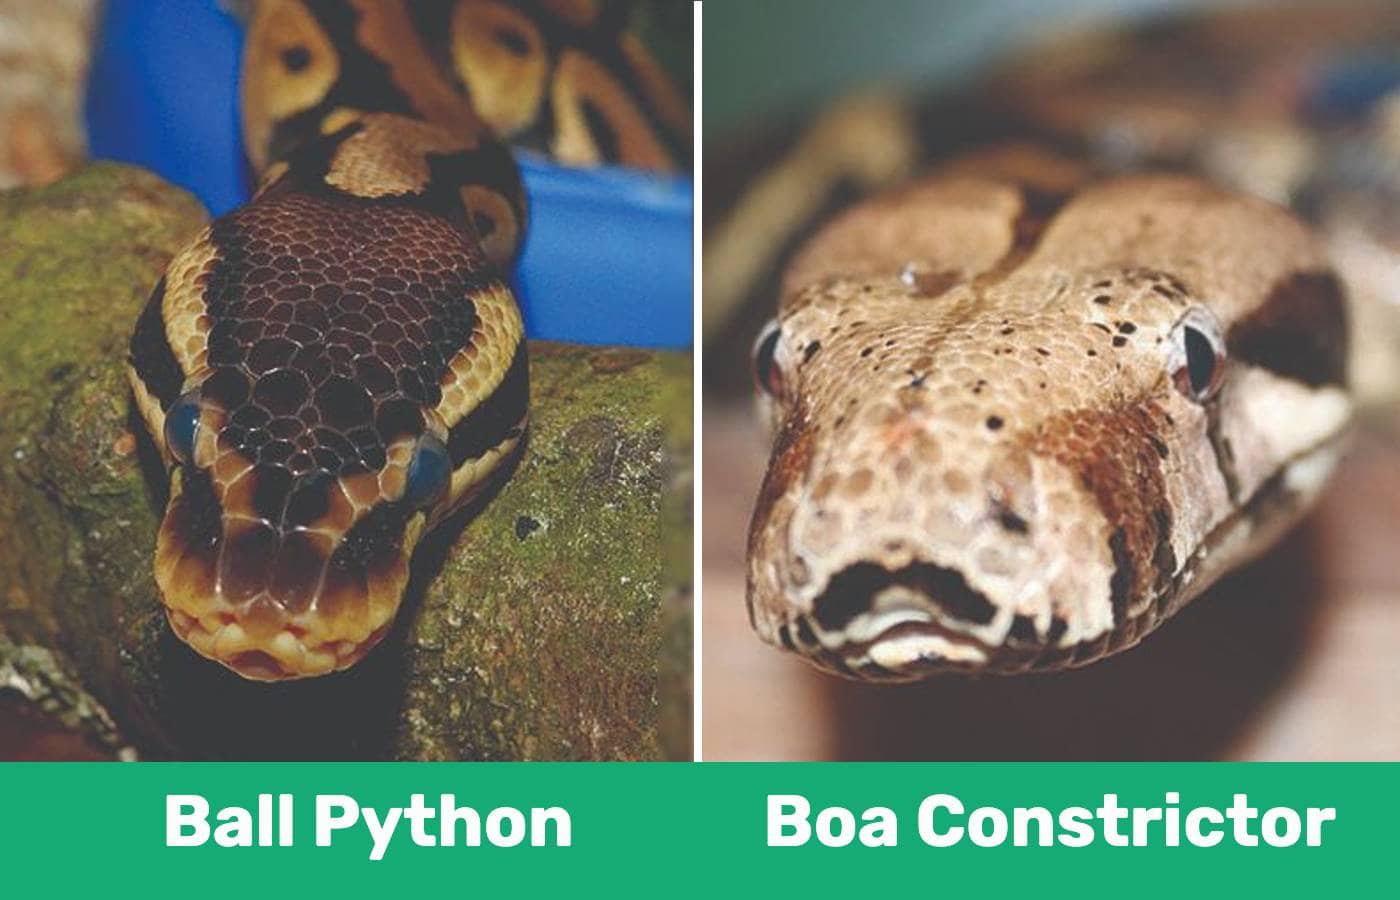 ball python vs boa constrictor fight comparison- who will win?